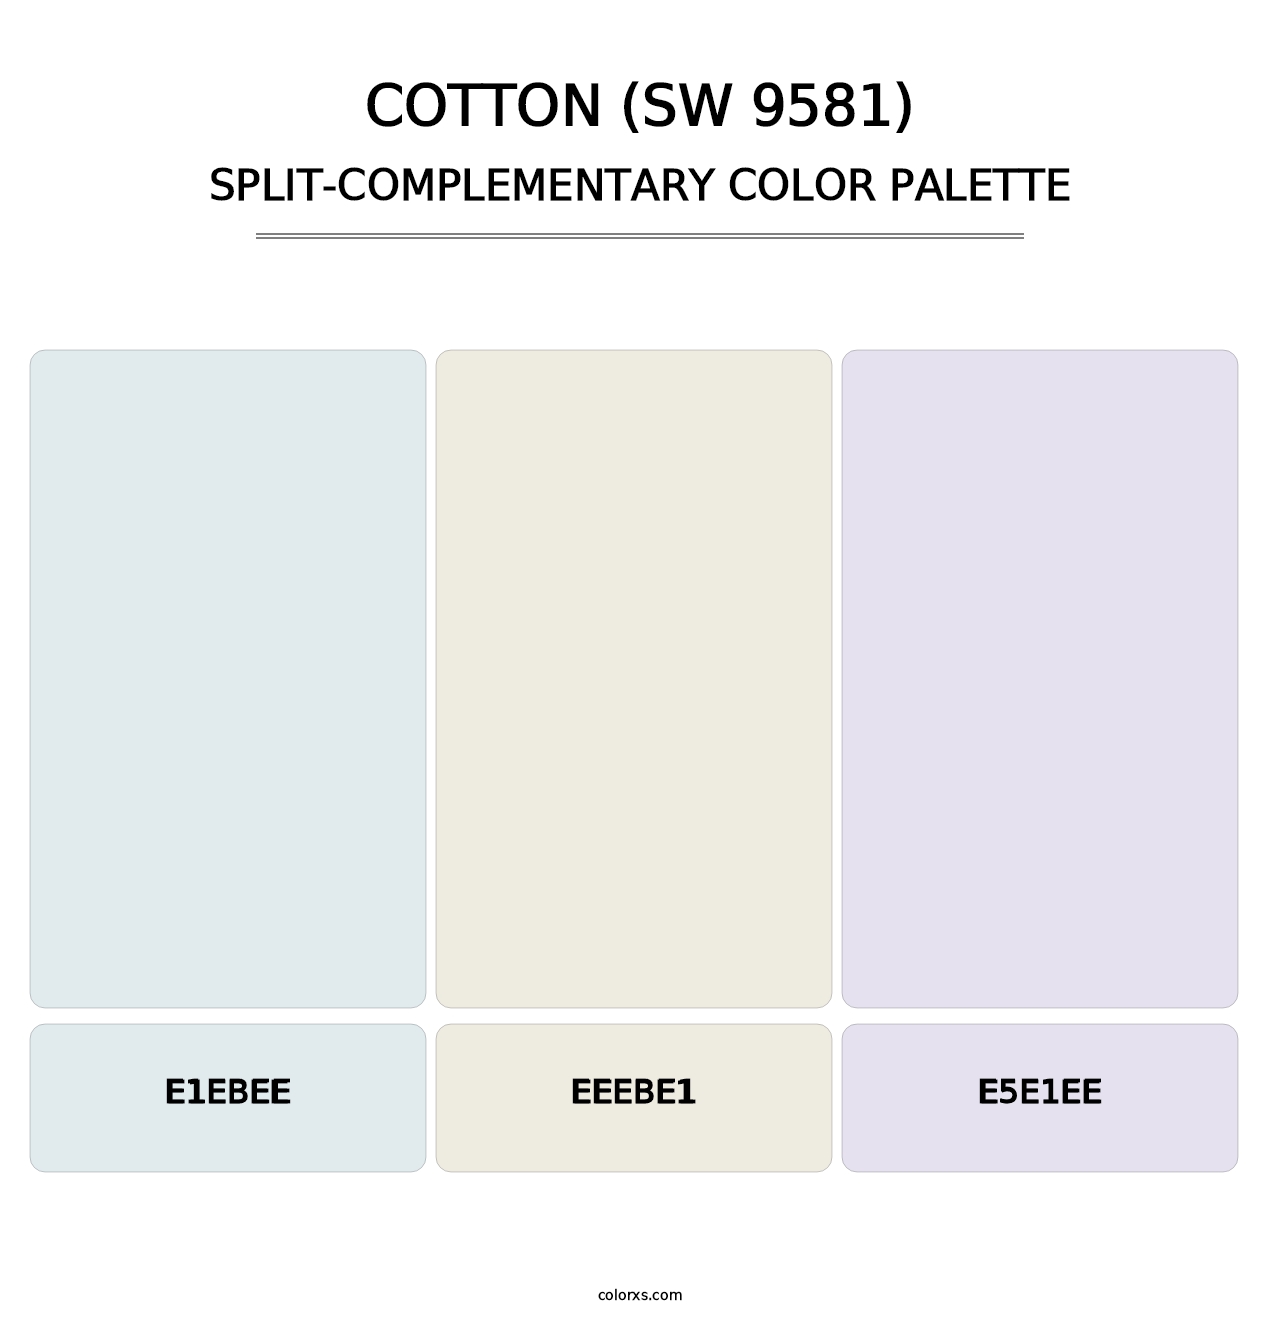 Cotton (SW 9581) - Split-Complementary Color Palette